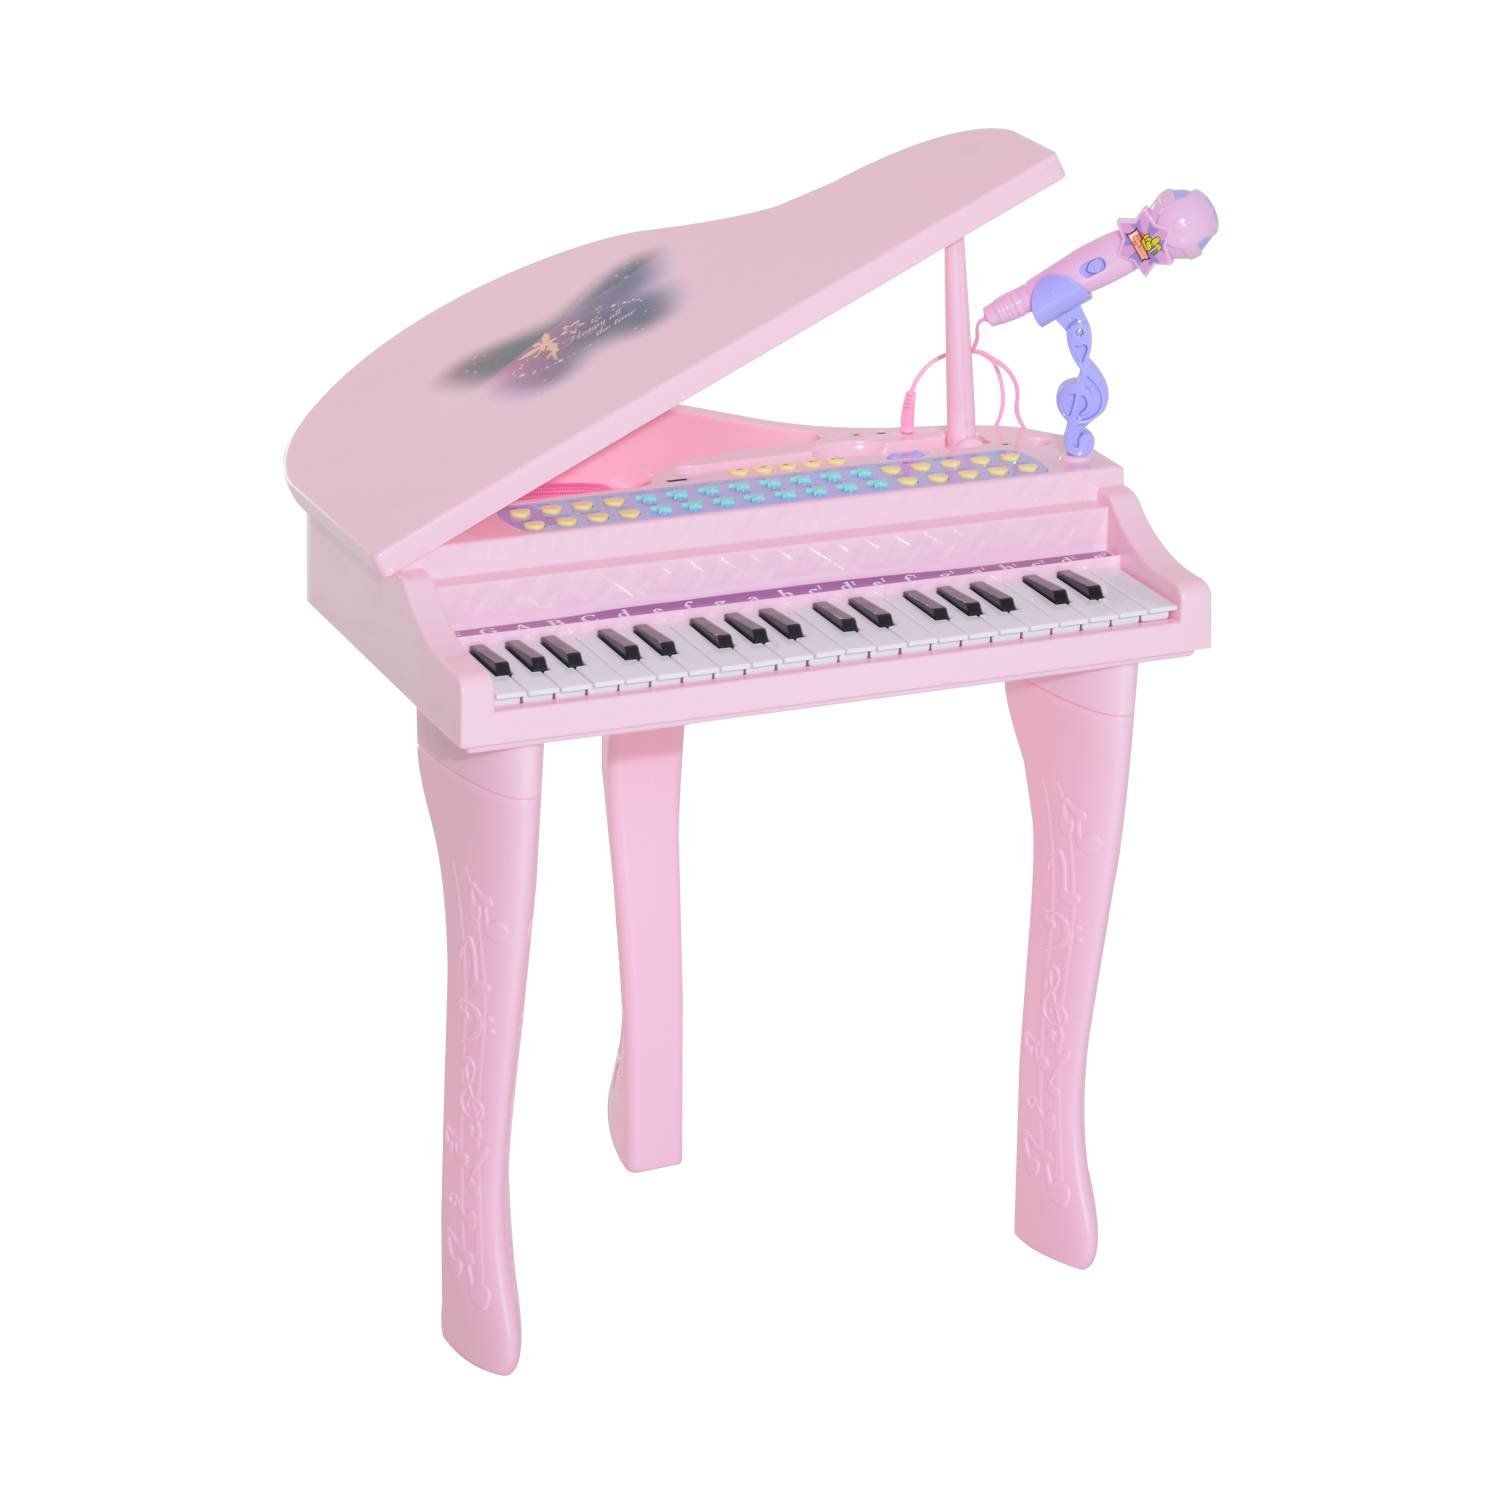 Piano Infantil Musical Microfone E Banquinho Função Gravação Cor